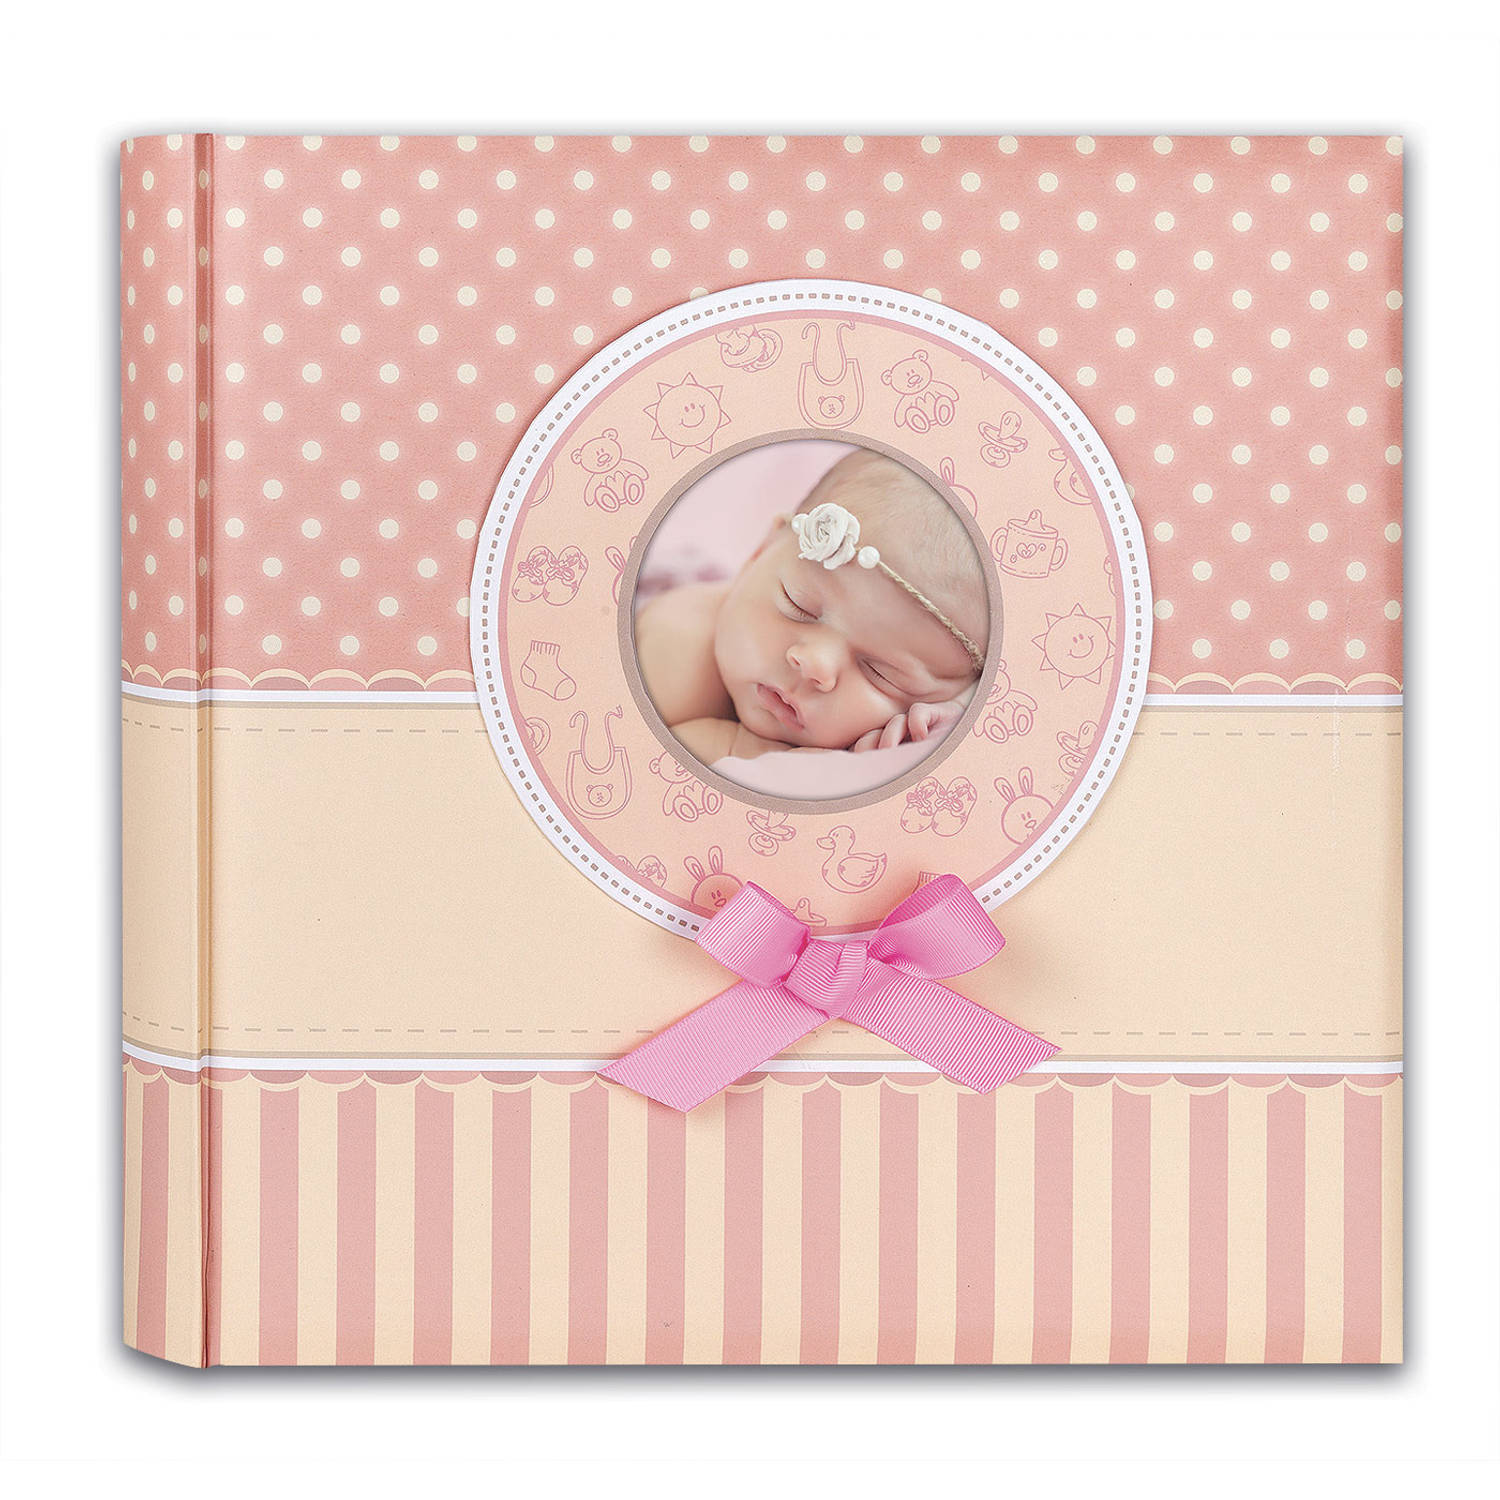 Fotoboek/fotoalbum Matilda baby meisje met 30 paginas roze 31 x 31 x 3,5 cm - Fotoalbums